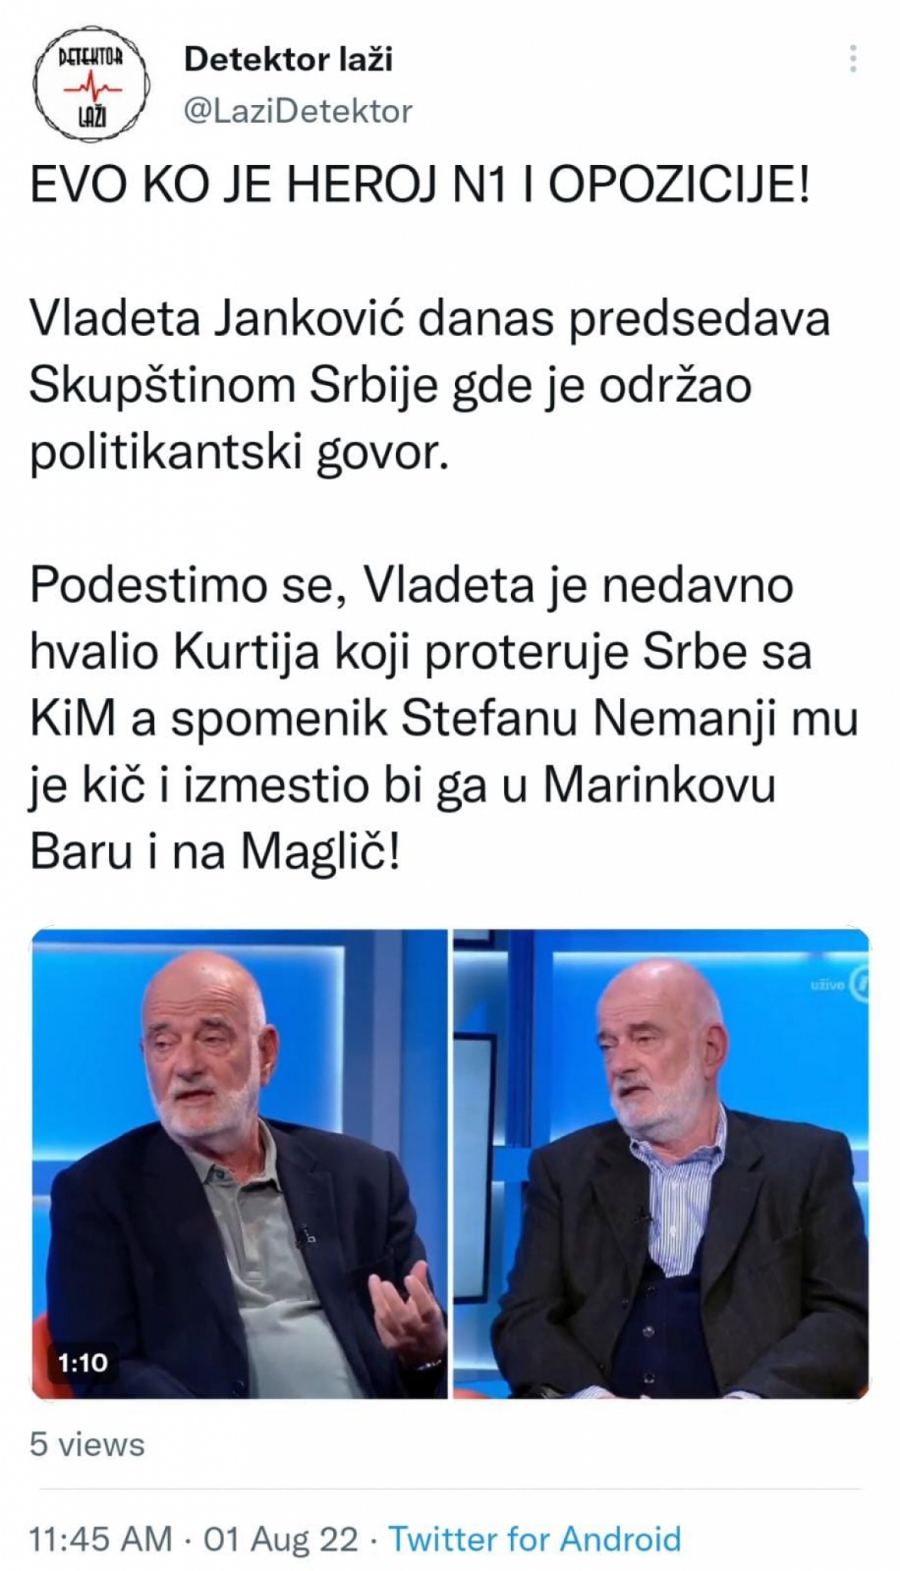 PODSETIMO SE HEROJA N1 I OPOZICIJE Janković je nedavno hvalio Kurtija, a danas predsedava Skupštinom Srbije (VIDEO)